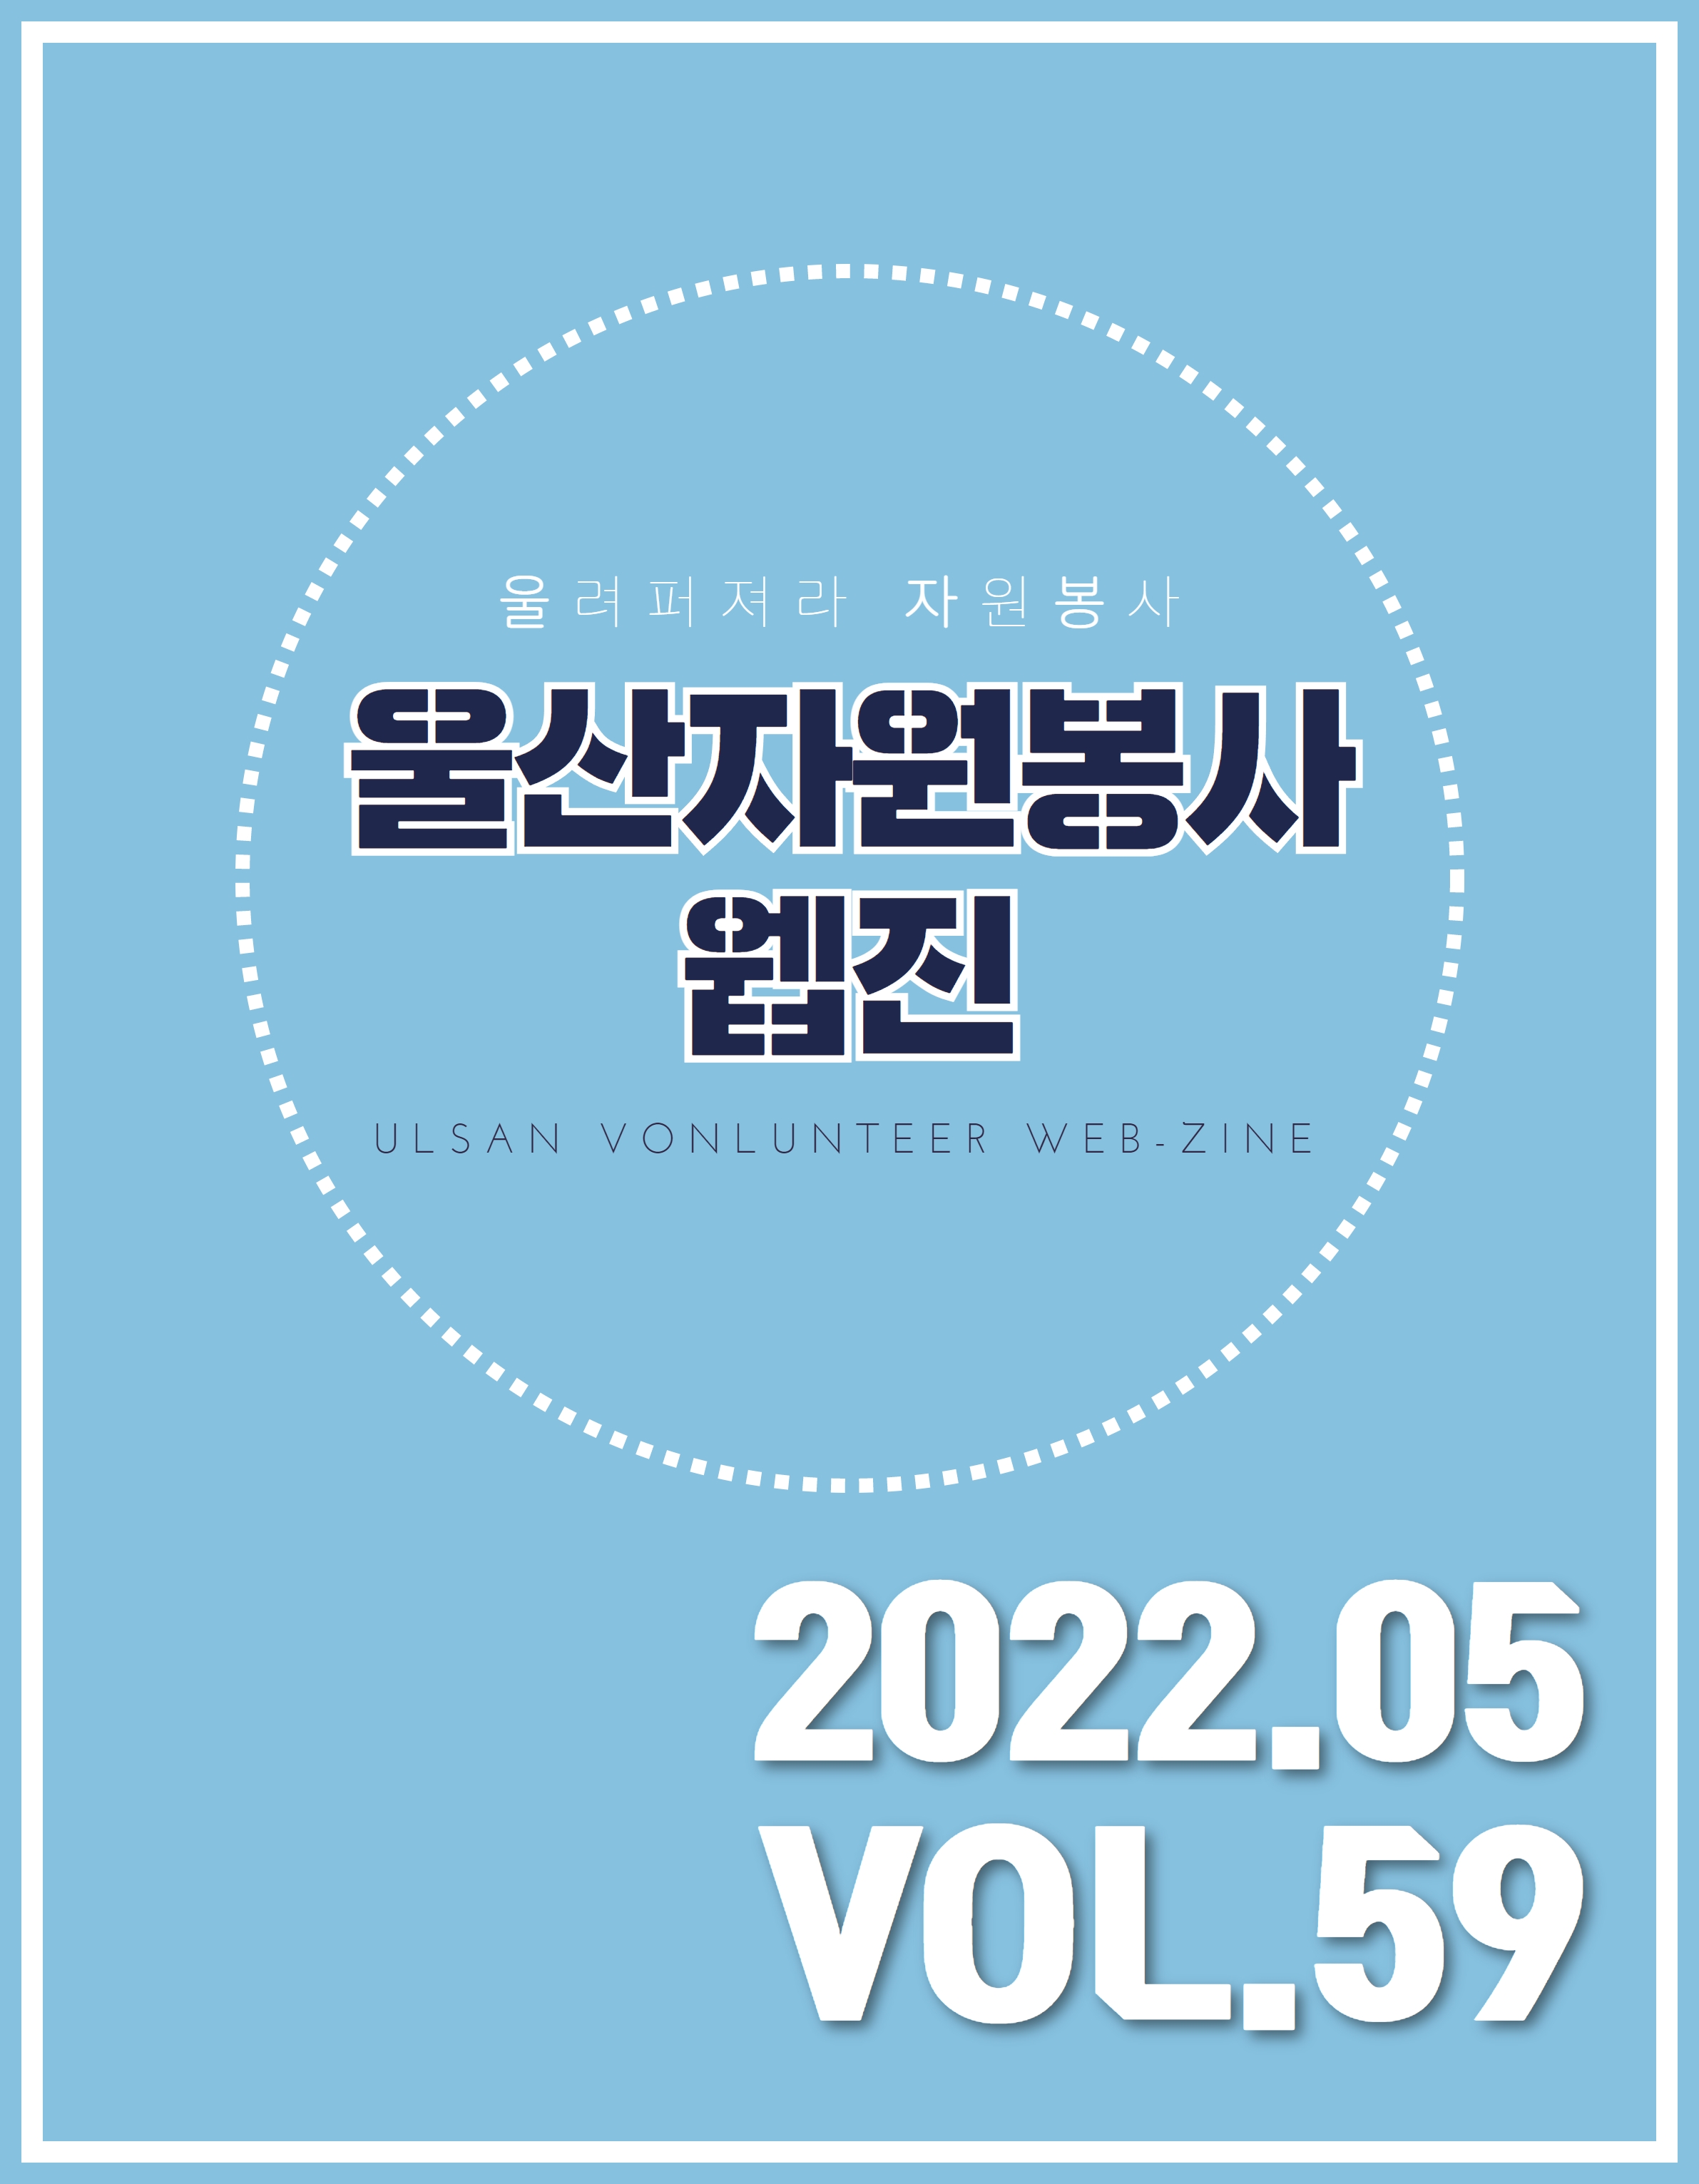 울산자원봉사웹진 59호(2022-05)